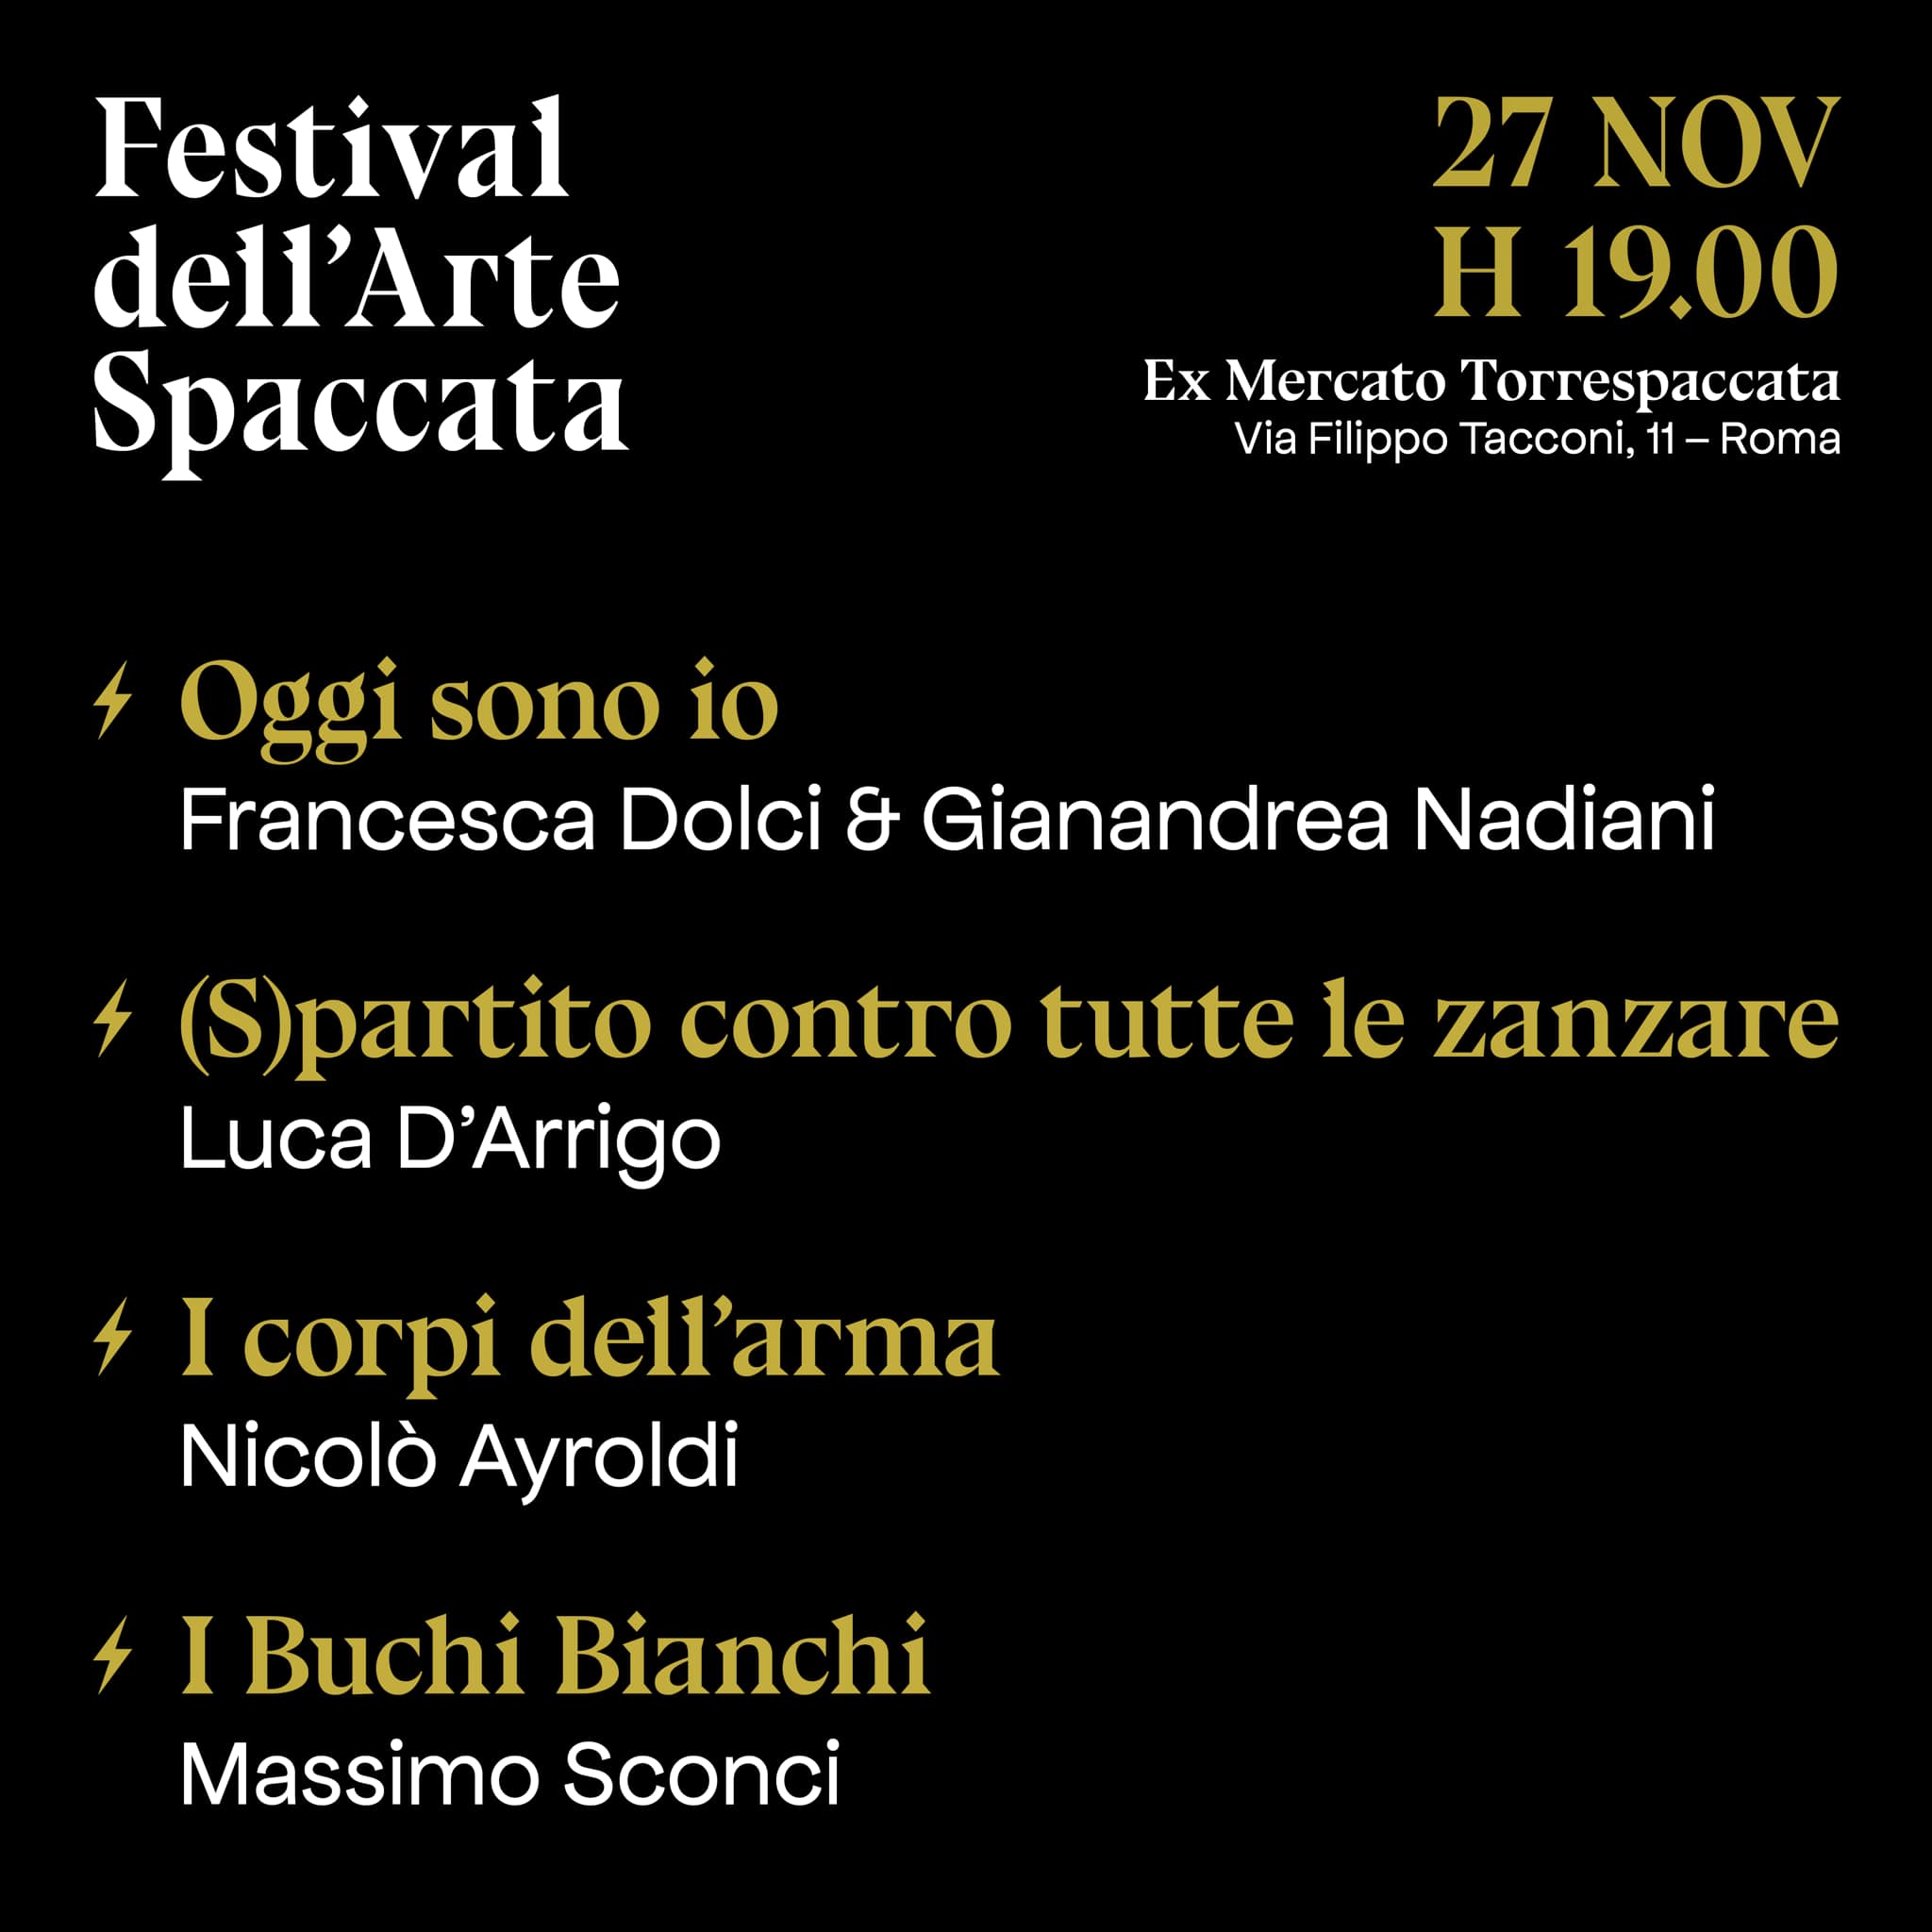 Festival dell'Arte Spaccata, Corti Teatrali, 27 novembre 2021